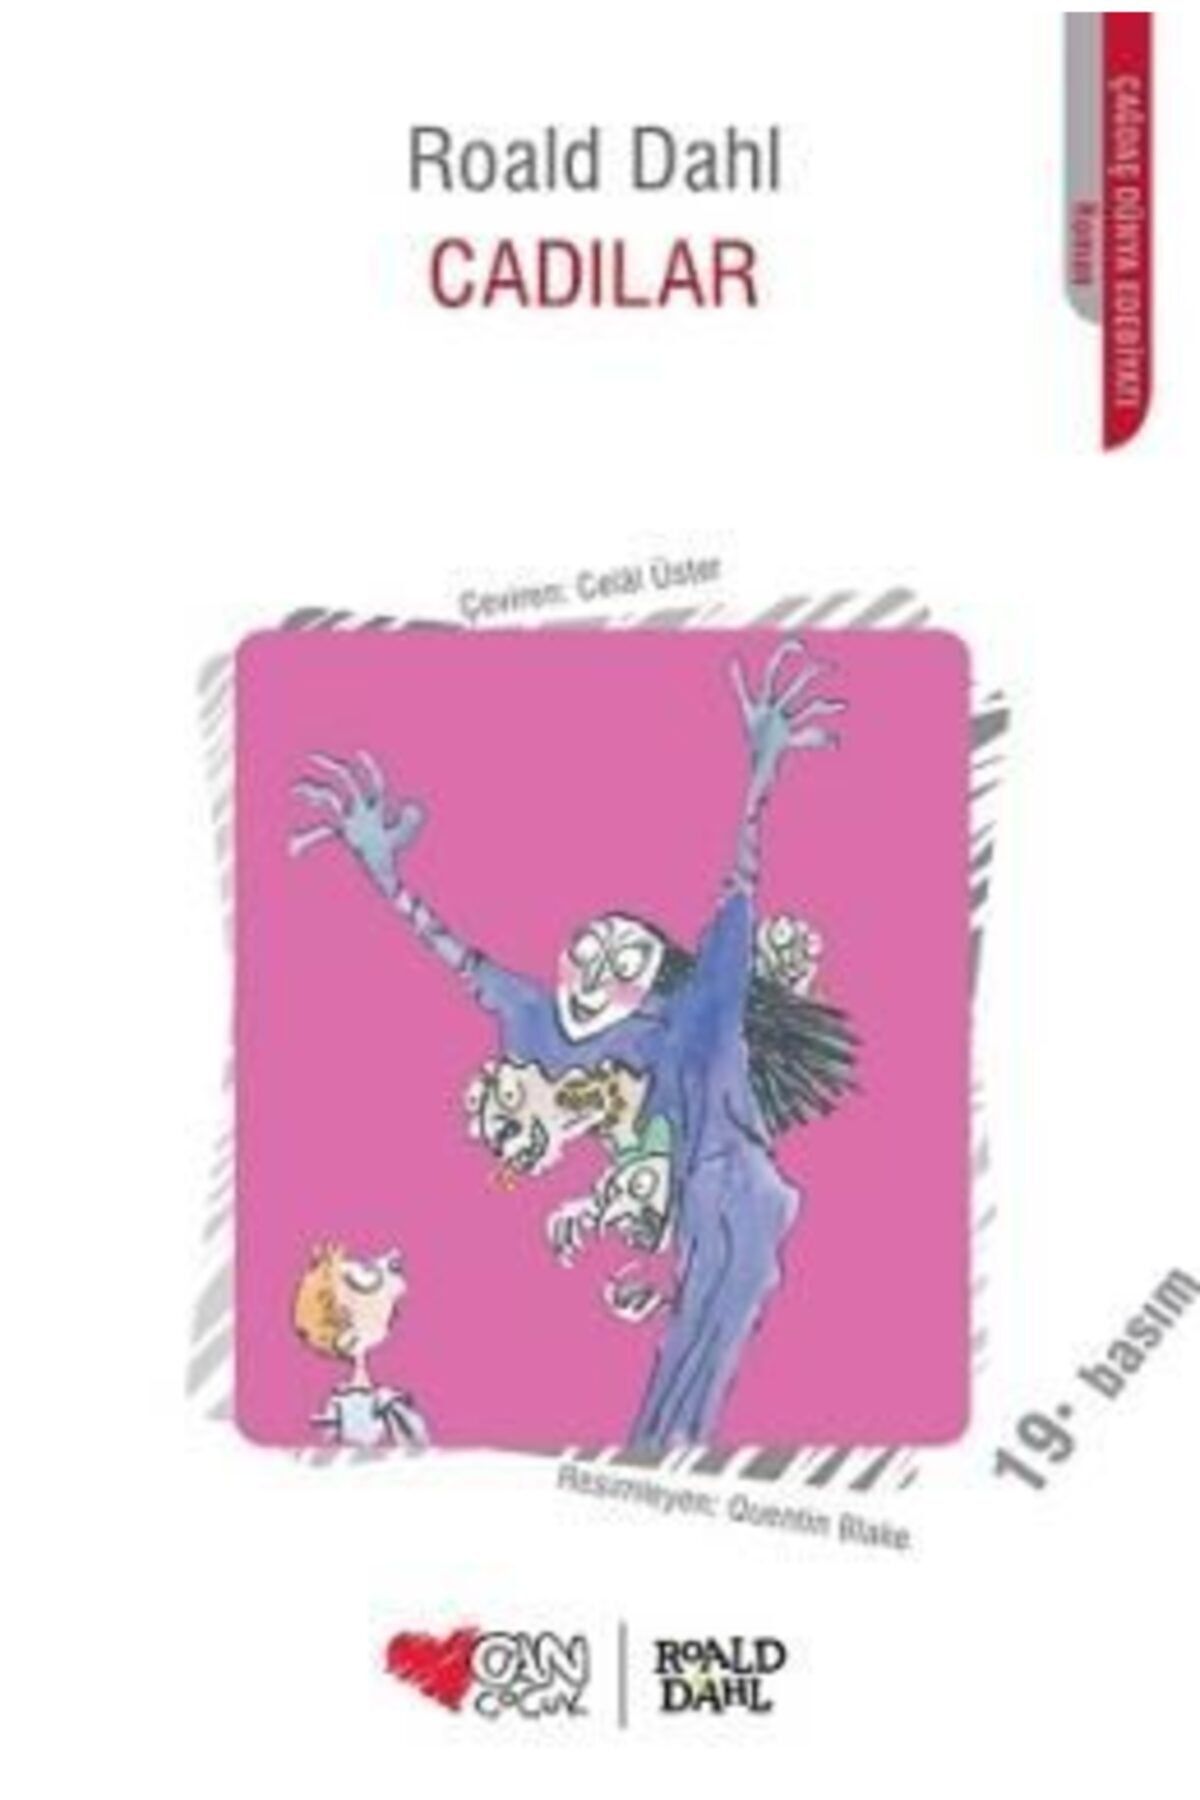 Can Yayınları Cadılar | Roald Dahl | Can Çocuk Yayınları